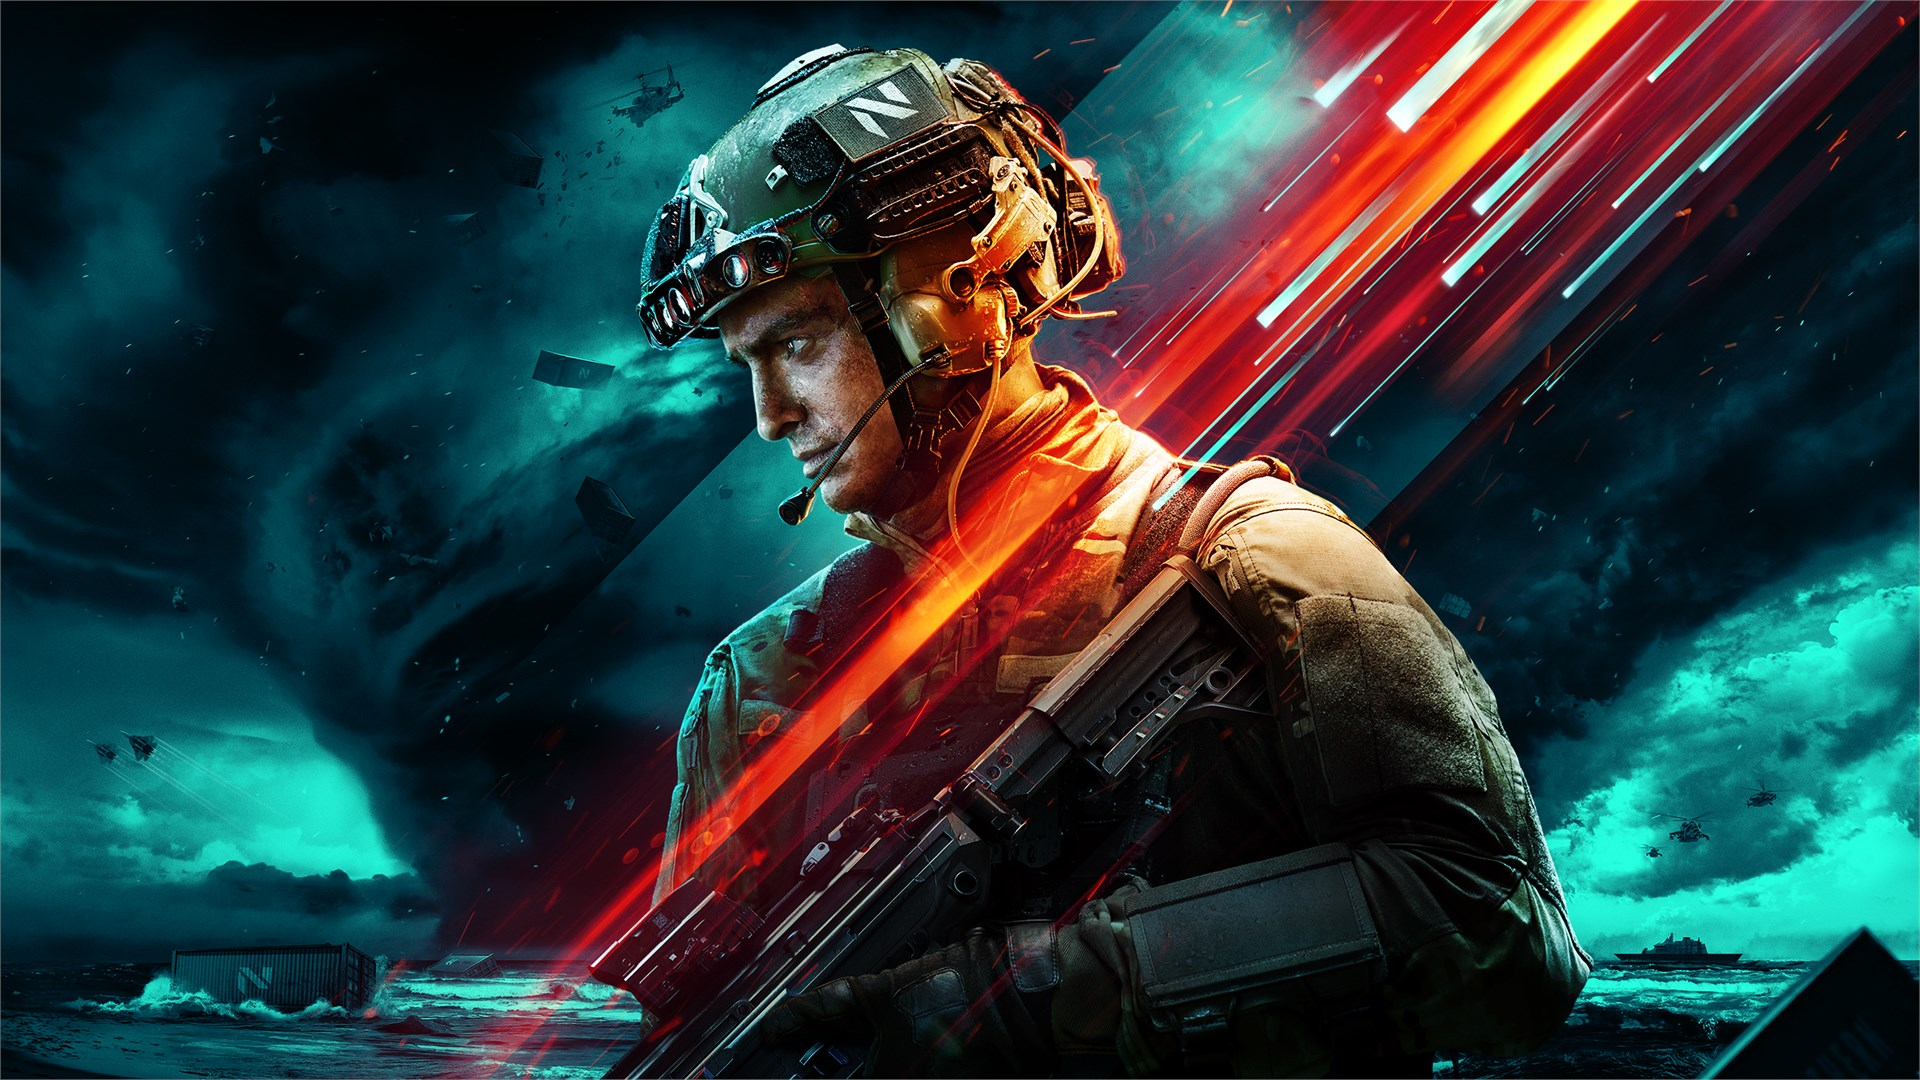 Battlefield 2042 cover art